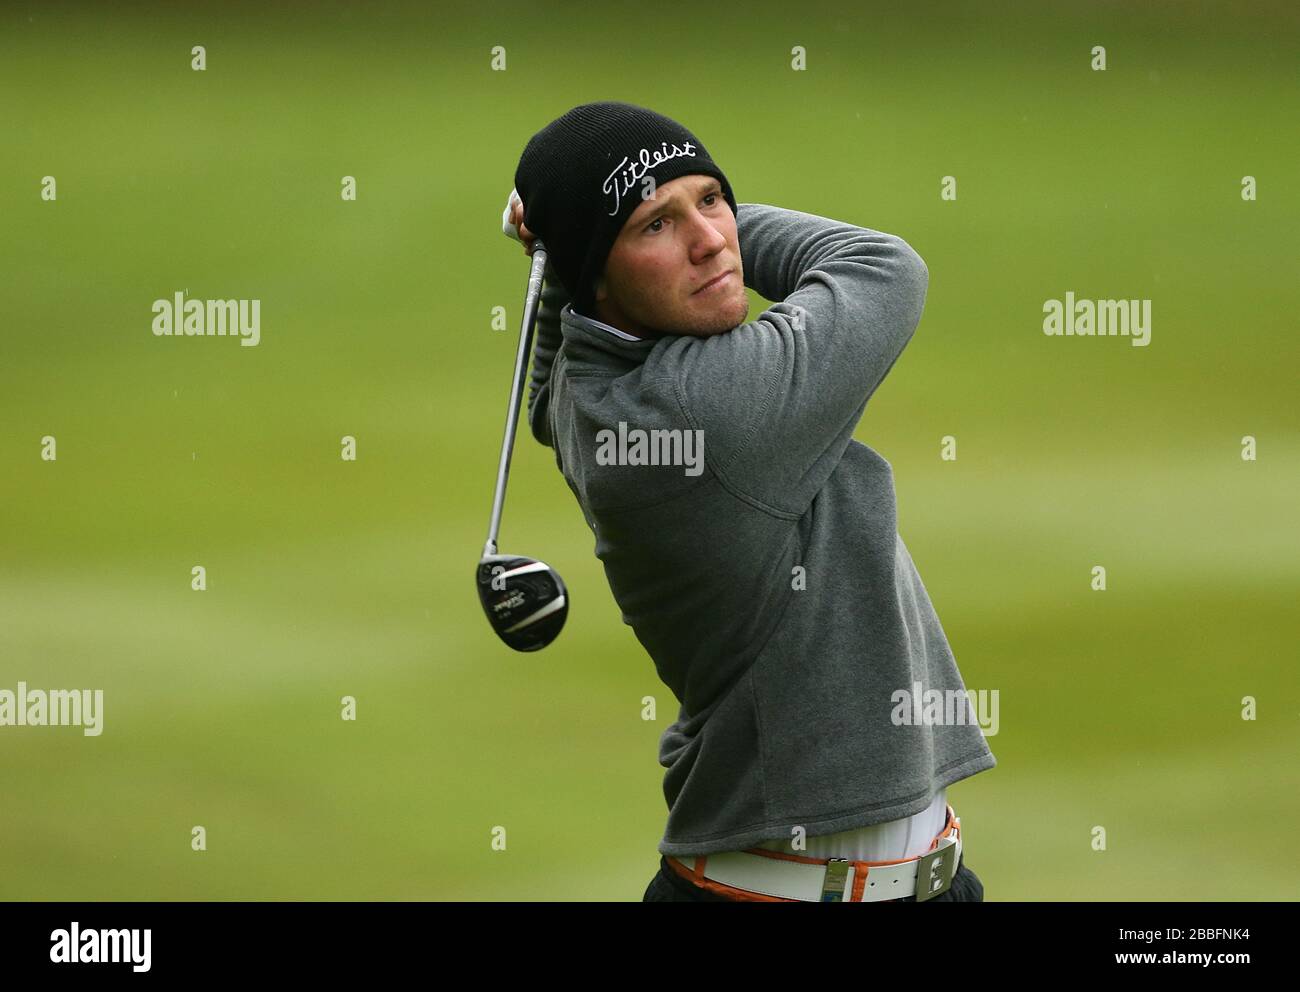 Maximilian Kieffer in Germania durante il secondo giorno del campionato PGA BMW 2013, al Wentworth Golf Club. Foto Stock